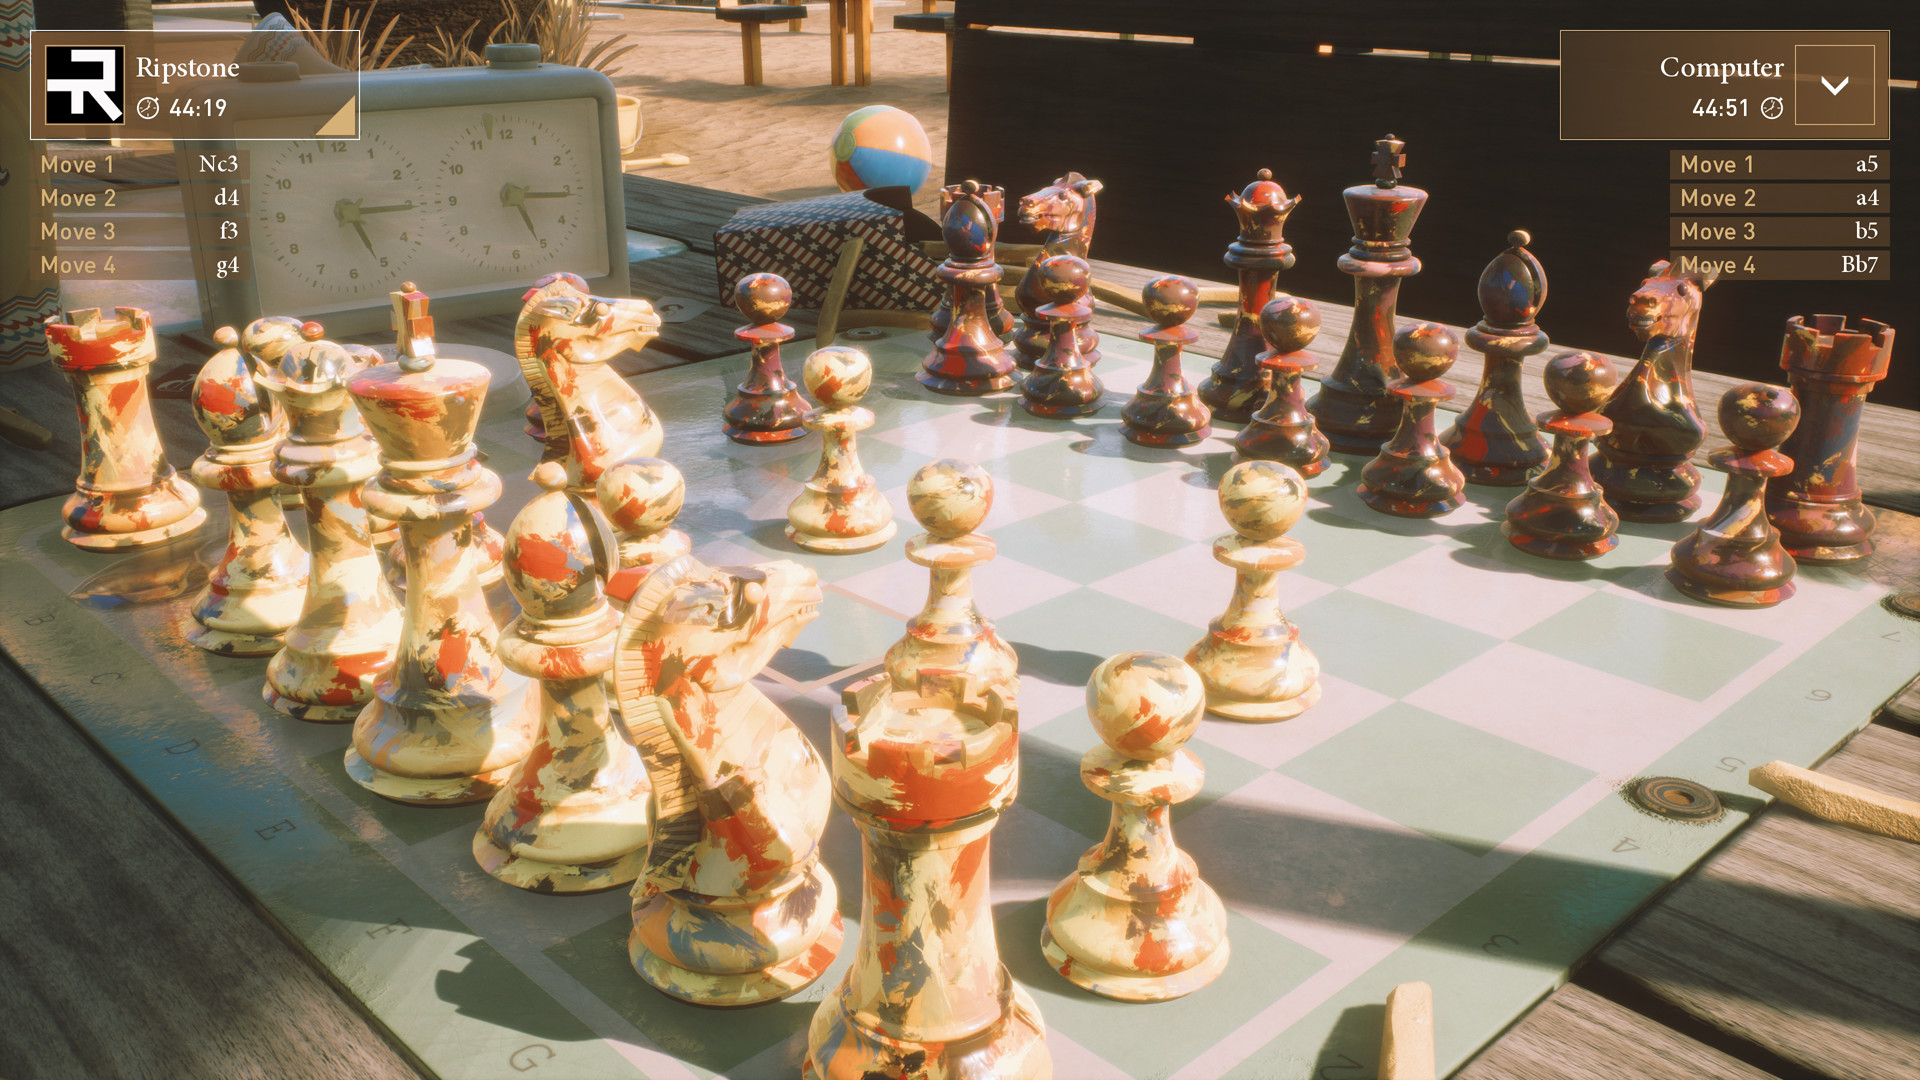 Chess Ultra: Conjunto de xadrez Easter Island grátis - Epic Games